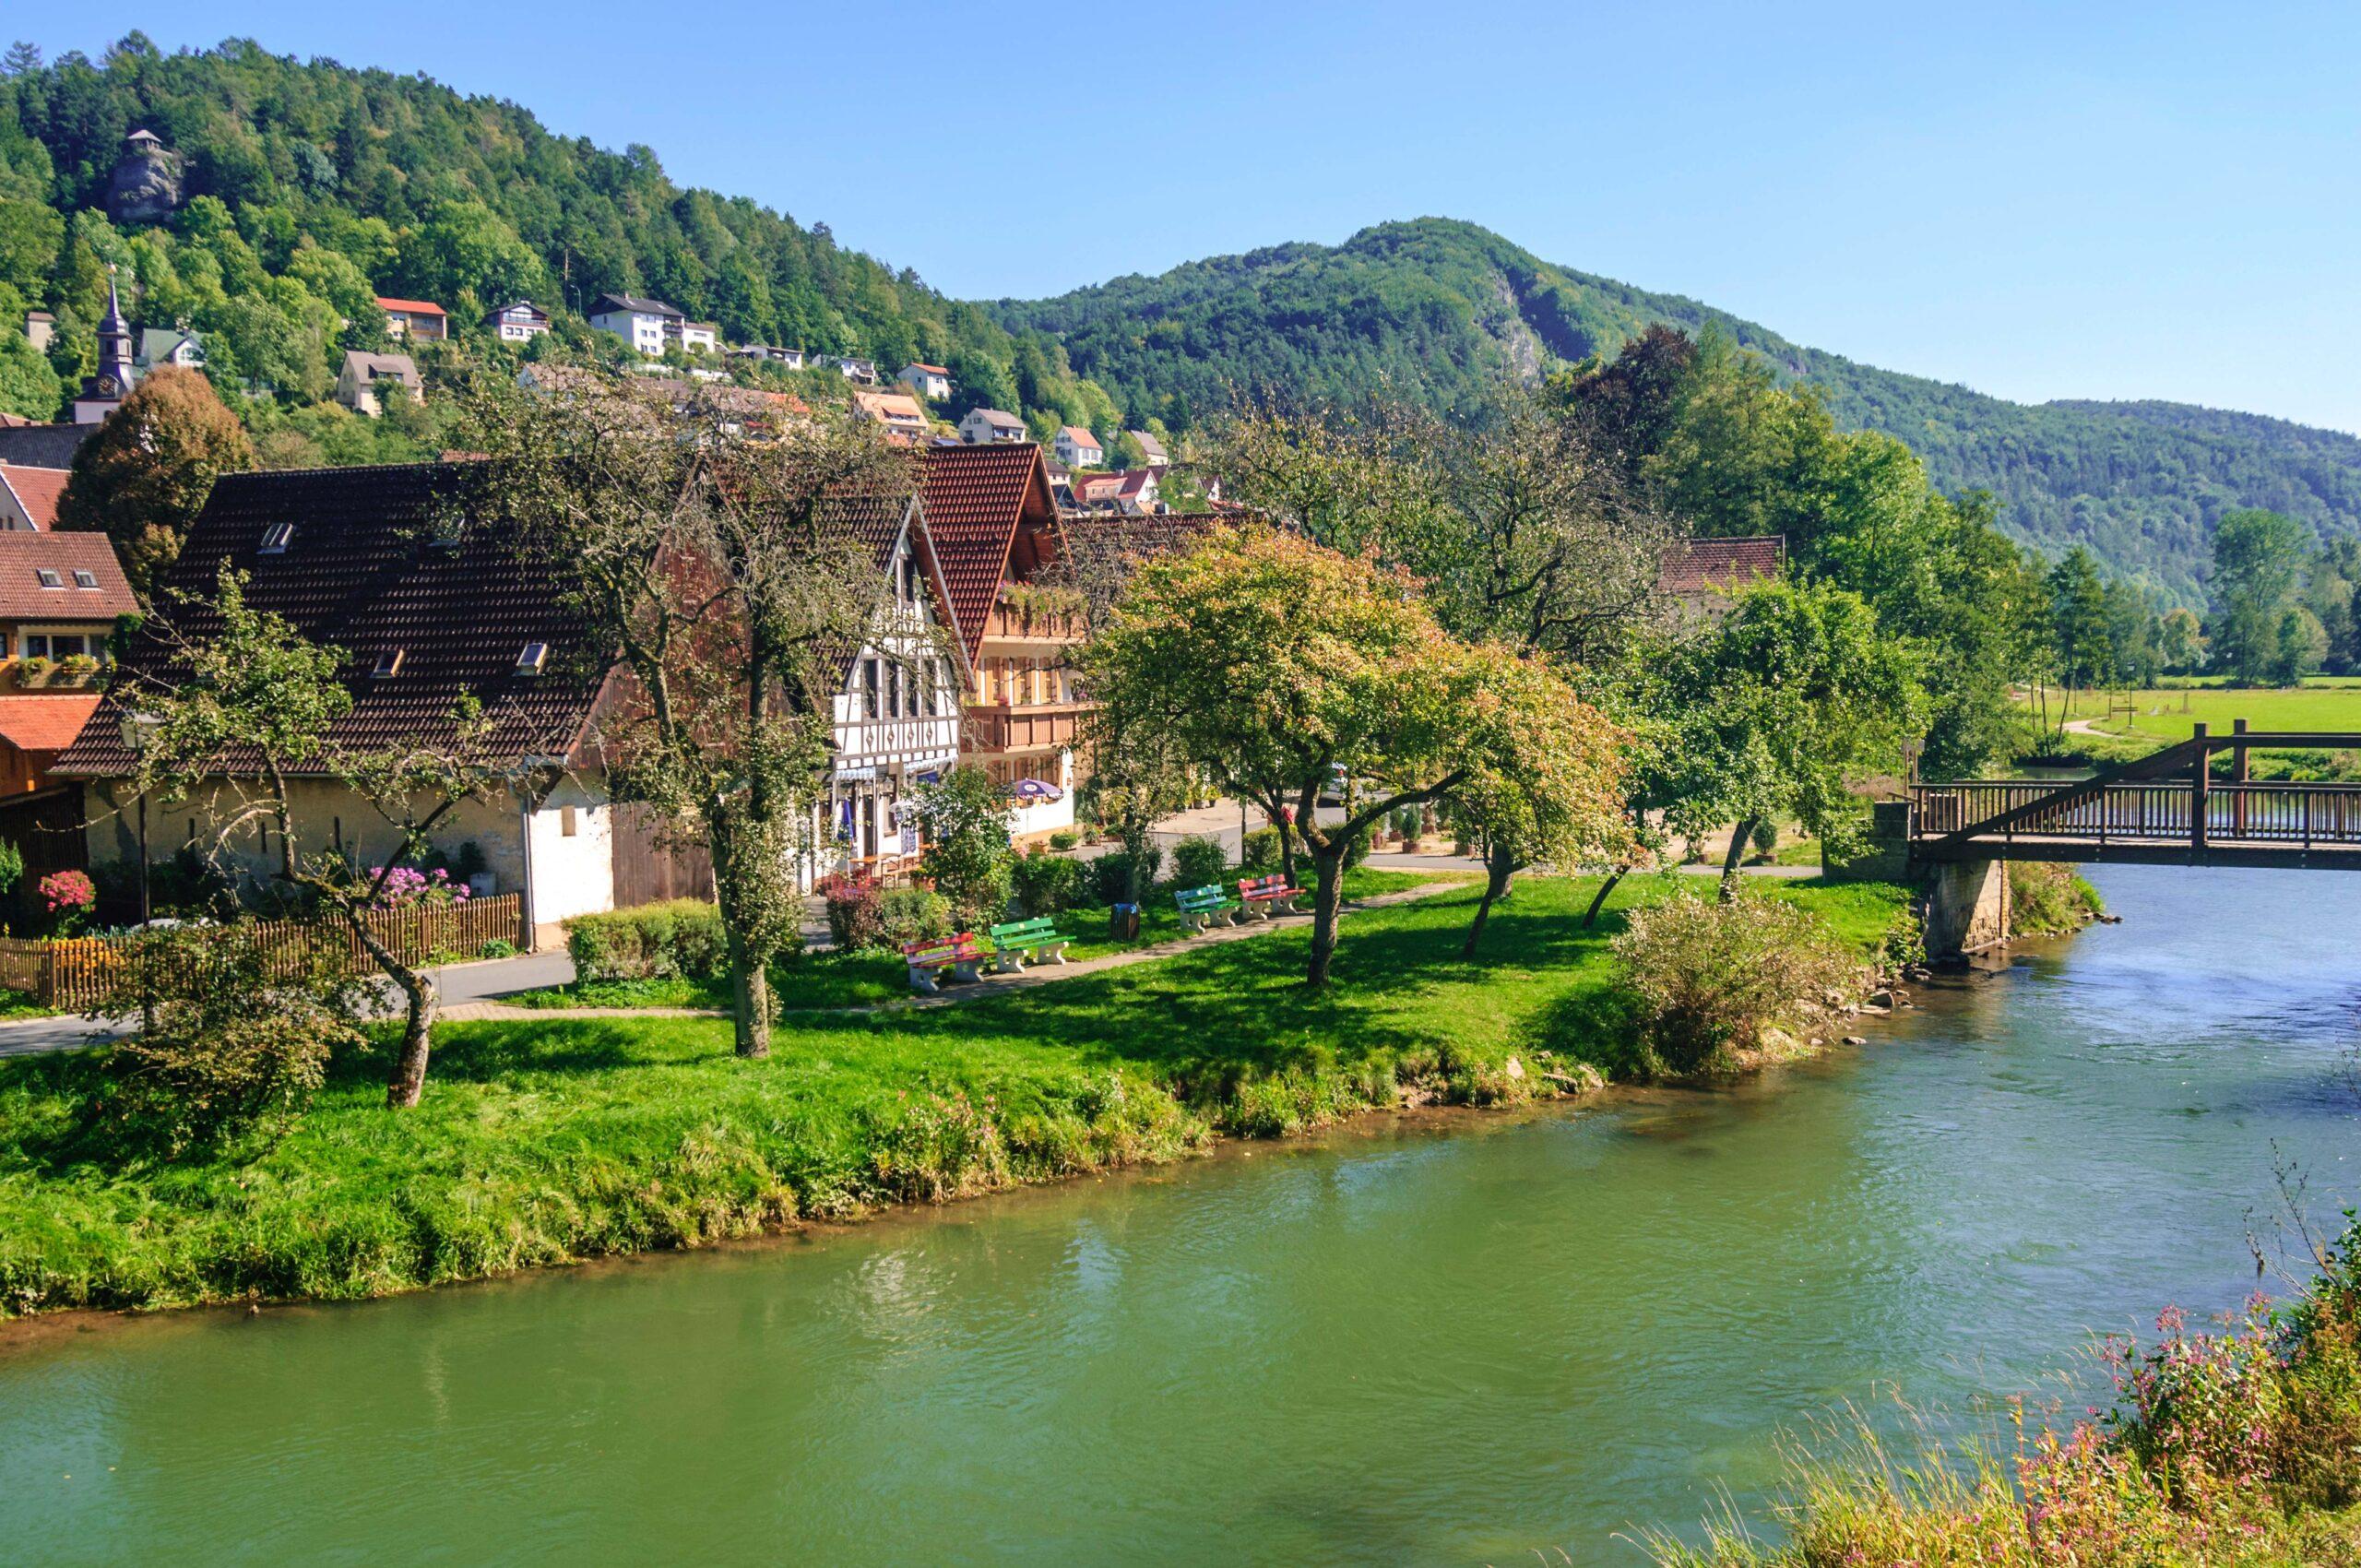 Blick auf den kleinen Ort Muggendorf im Wiesenttal in der fränkischen Schweiz